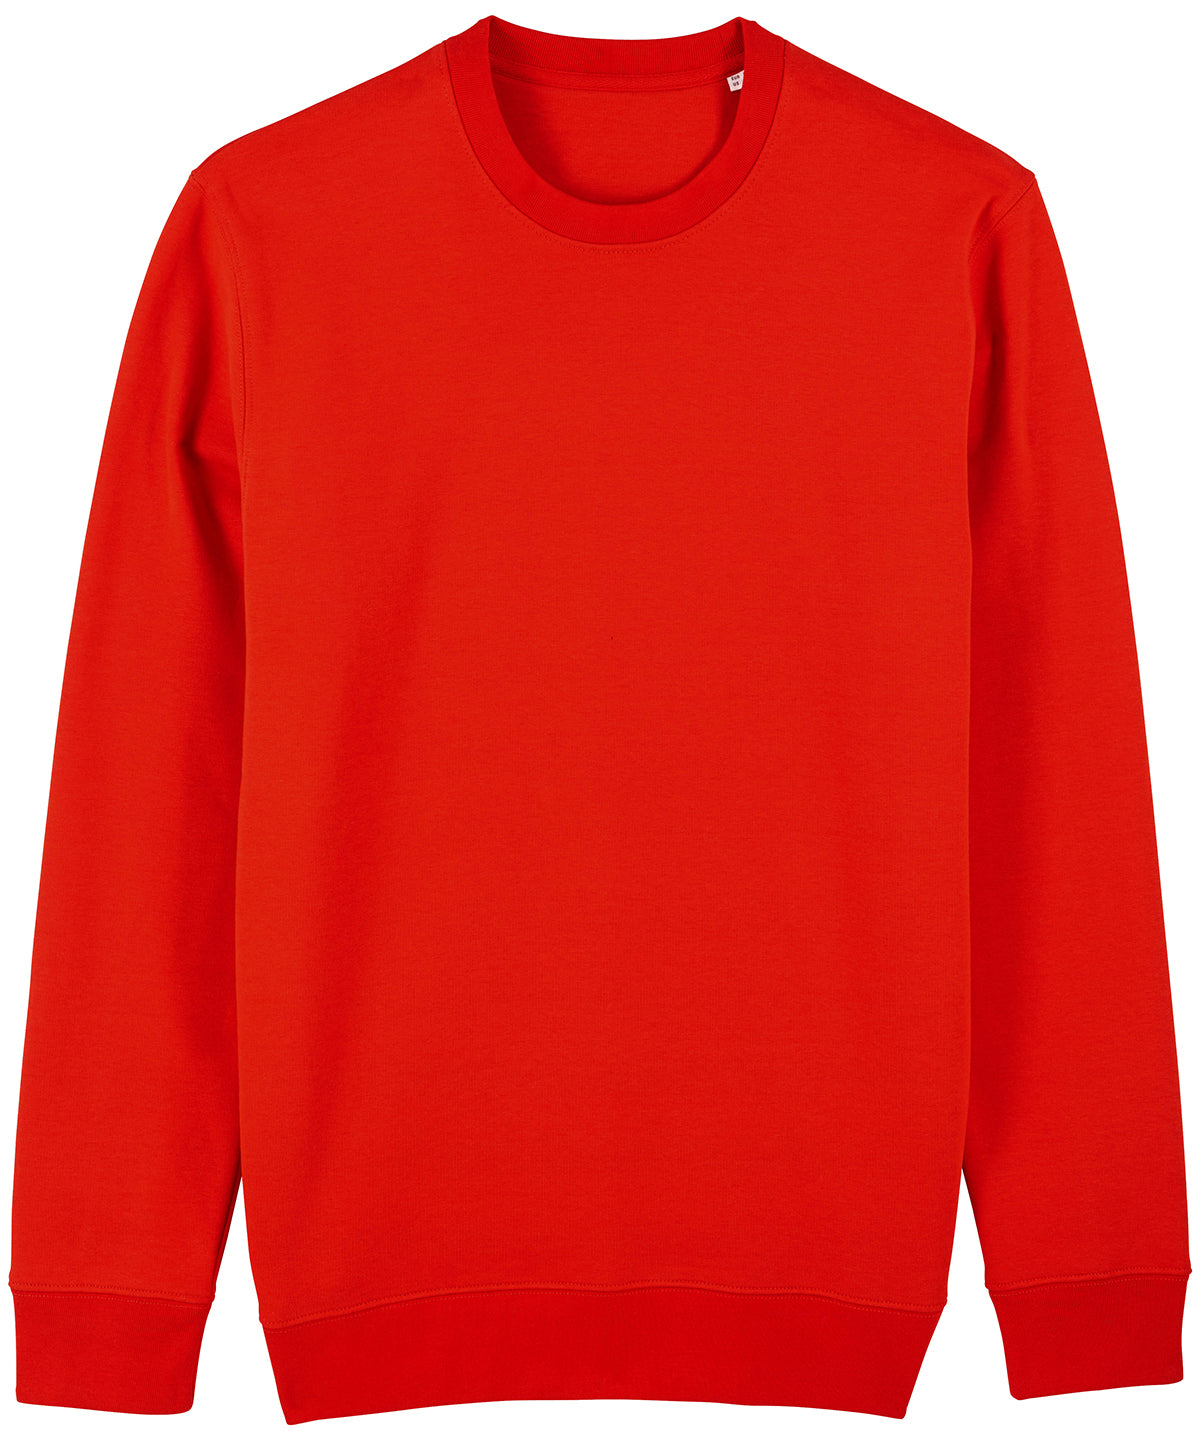 Stanley/Stella Unisex Changer Iconic Crew Neck Sweatshirt Bright Red